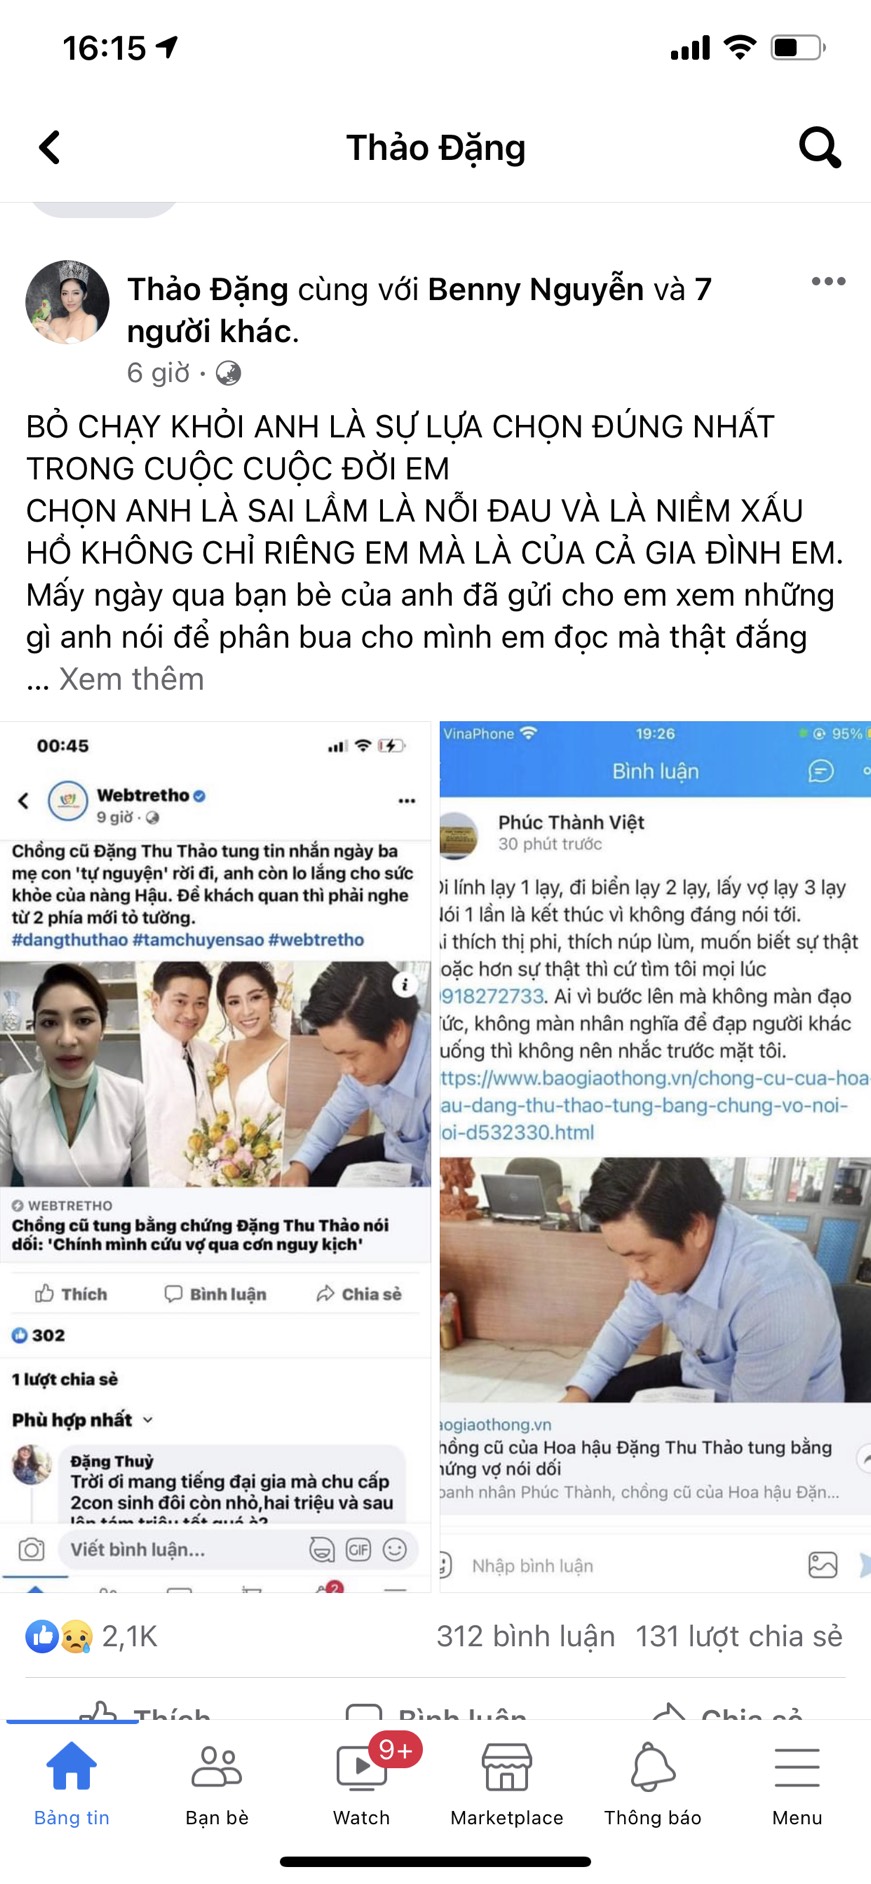 Bài viết mà Hoa hậu Đặng Thu Thảo đăng tải cách đây ít giờ